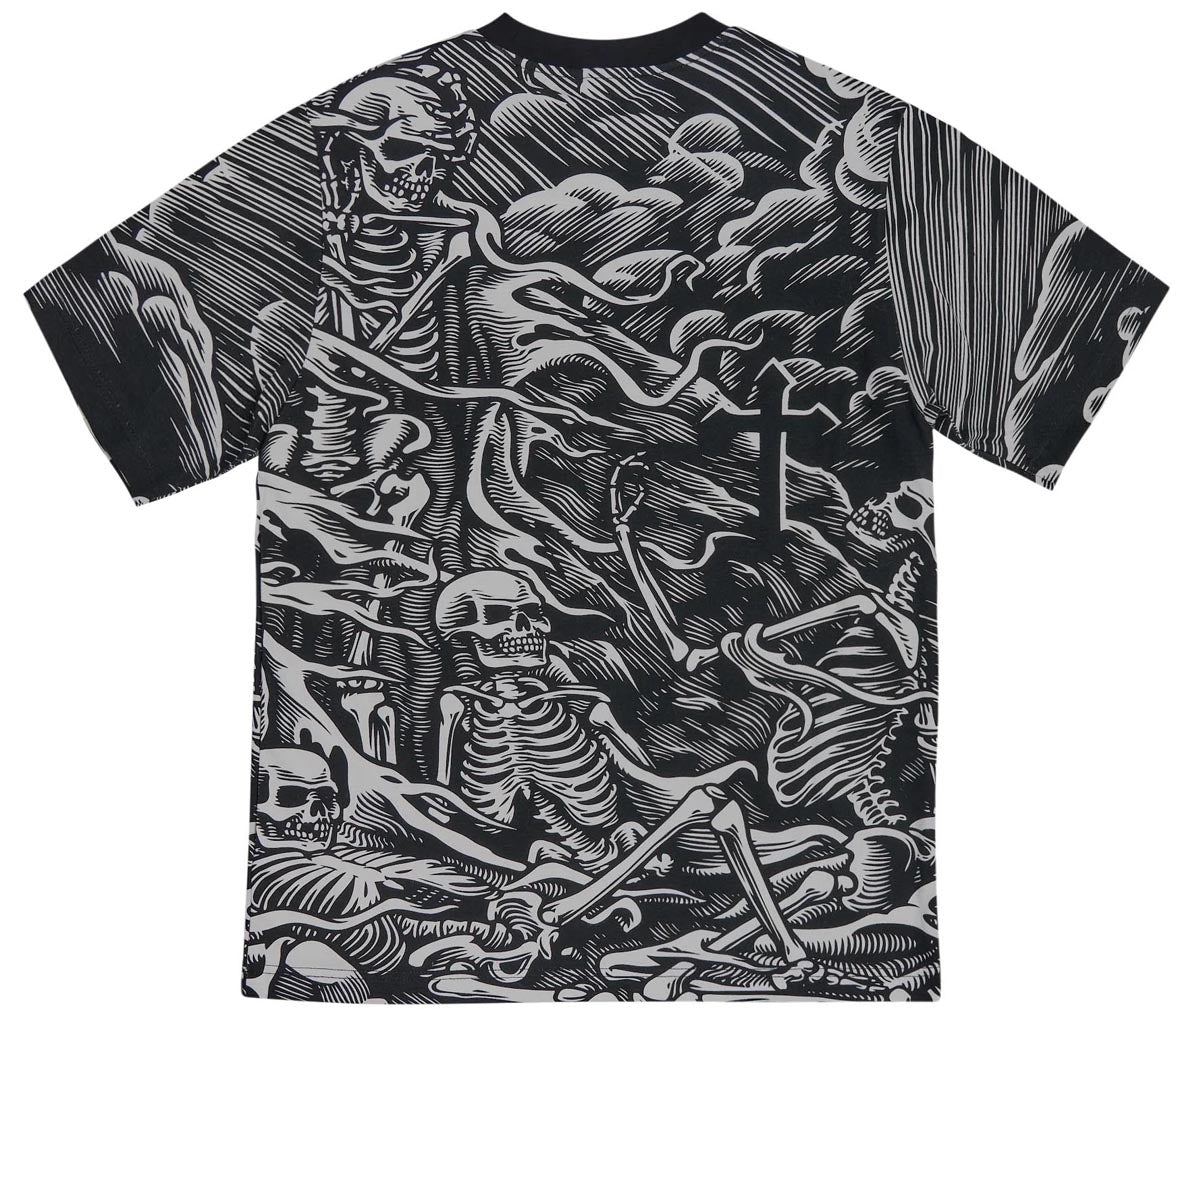 Santa Cruz O'Brien Purgatory T-Shirt - Black image 2